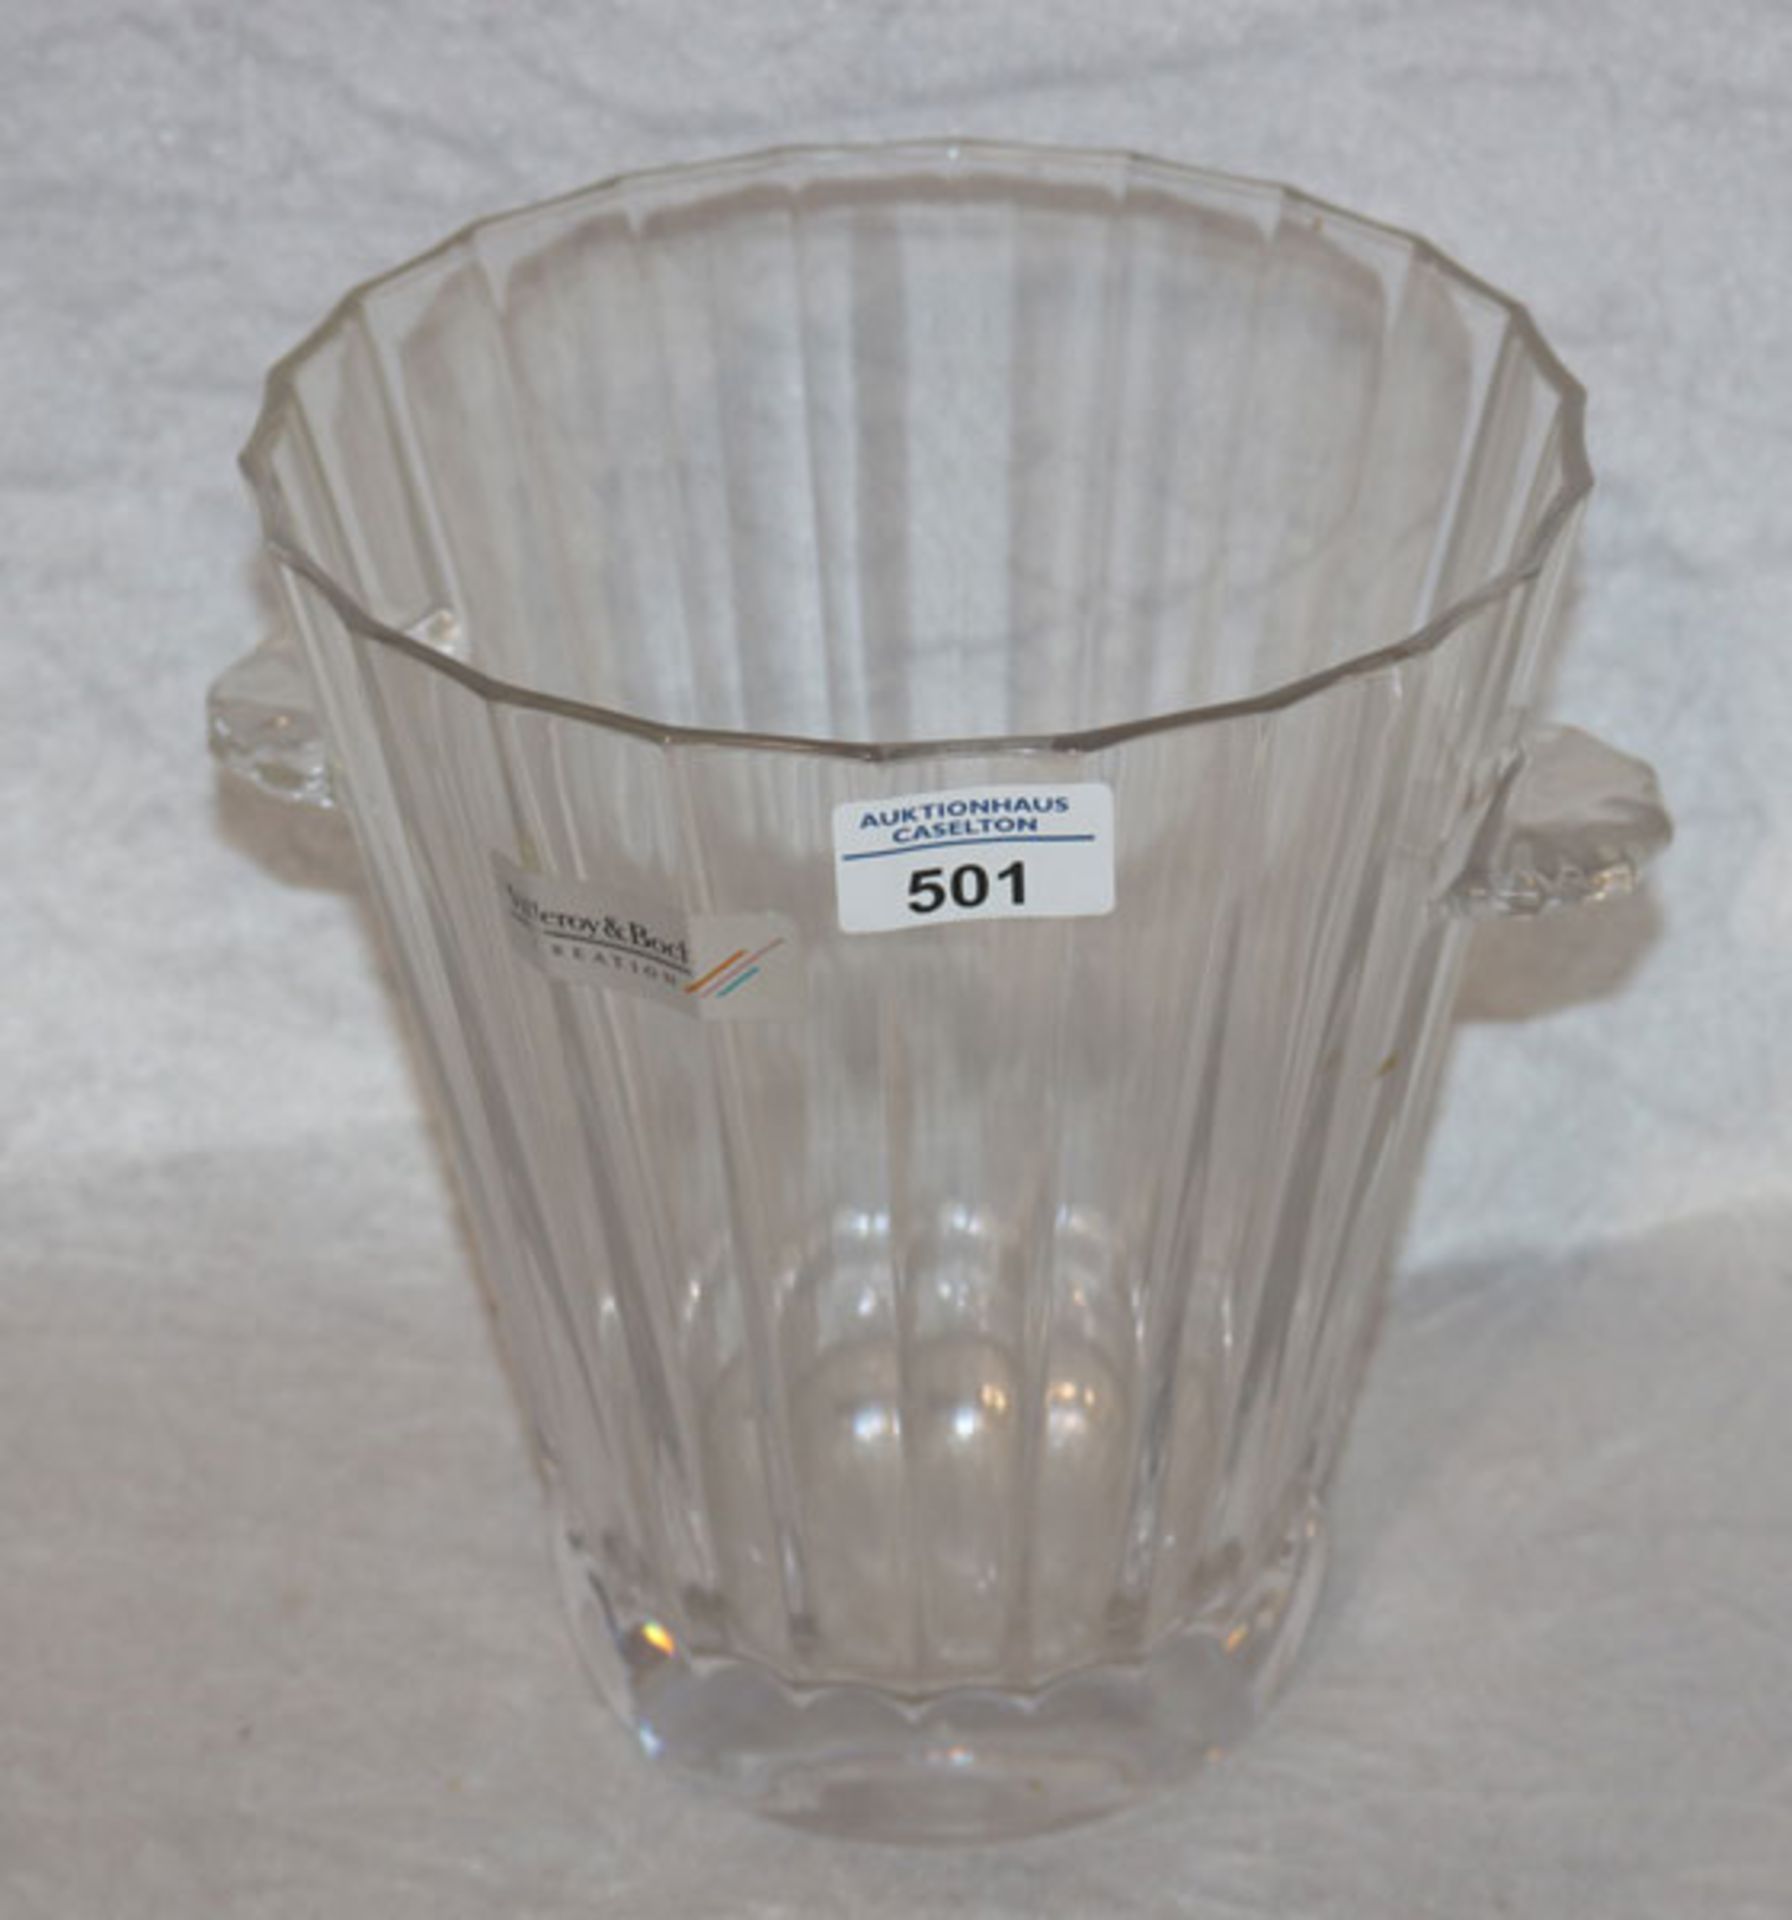 Villeroy & Boch Glas Weinkühler, H 23 cm, D 23 cm, Gebrauchsspuren